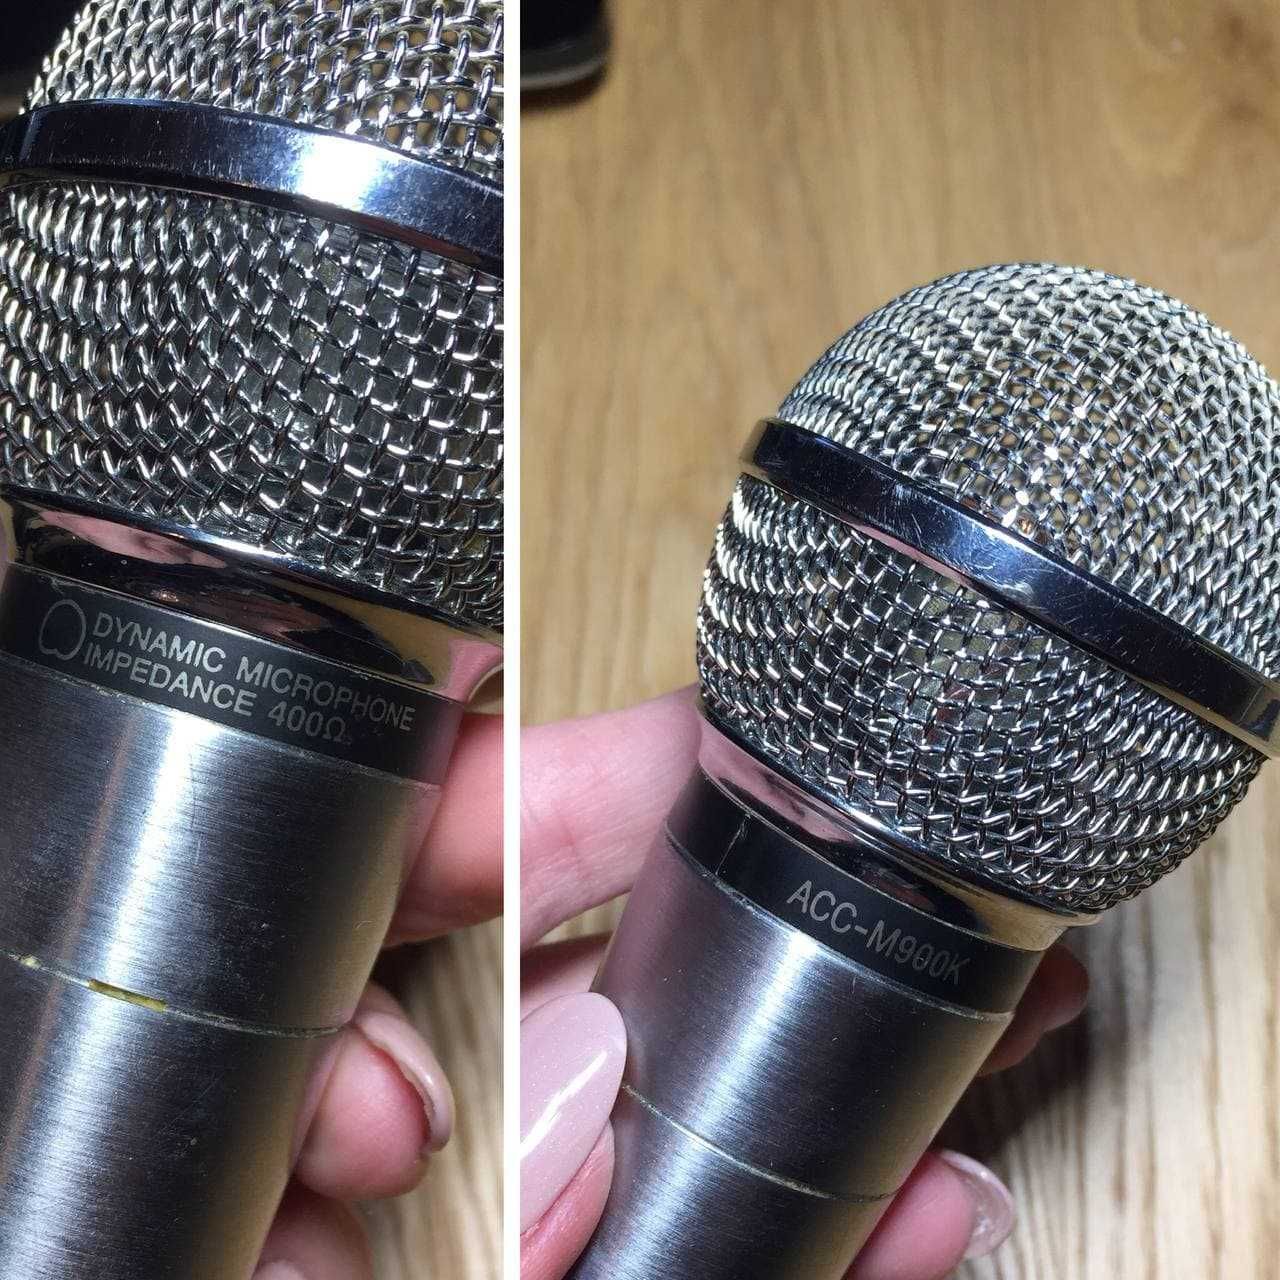 Микрофон LG вокальный ACC-M900K